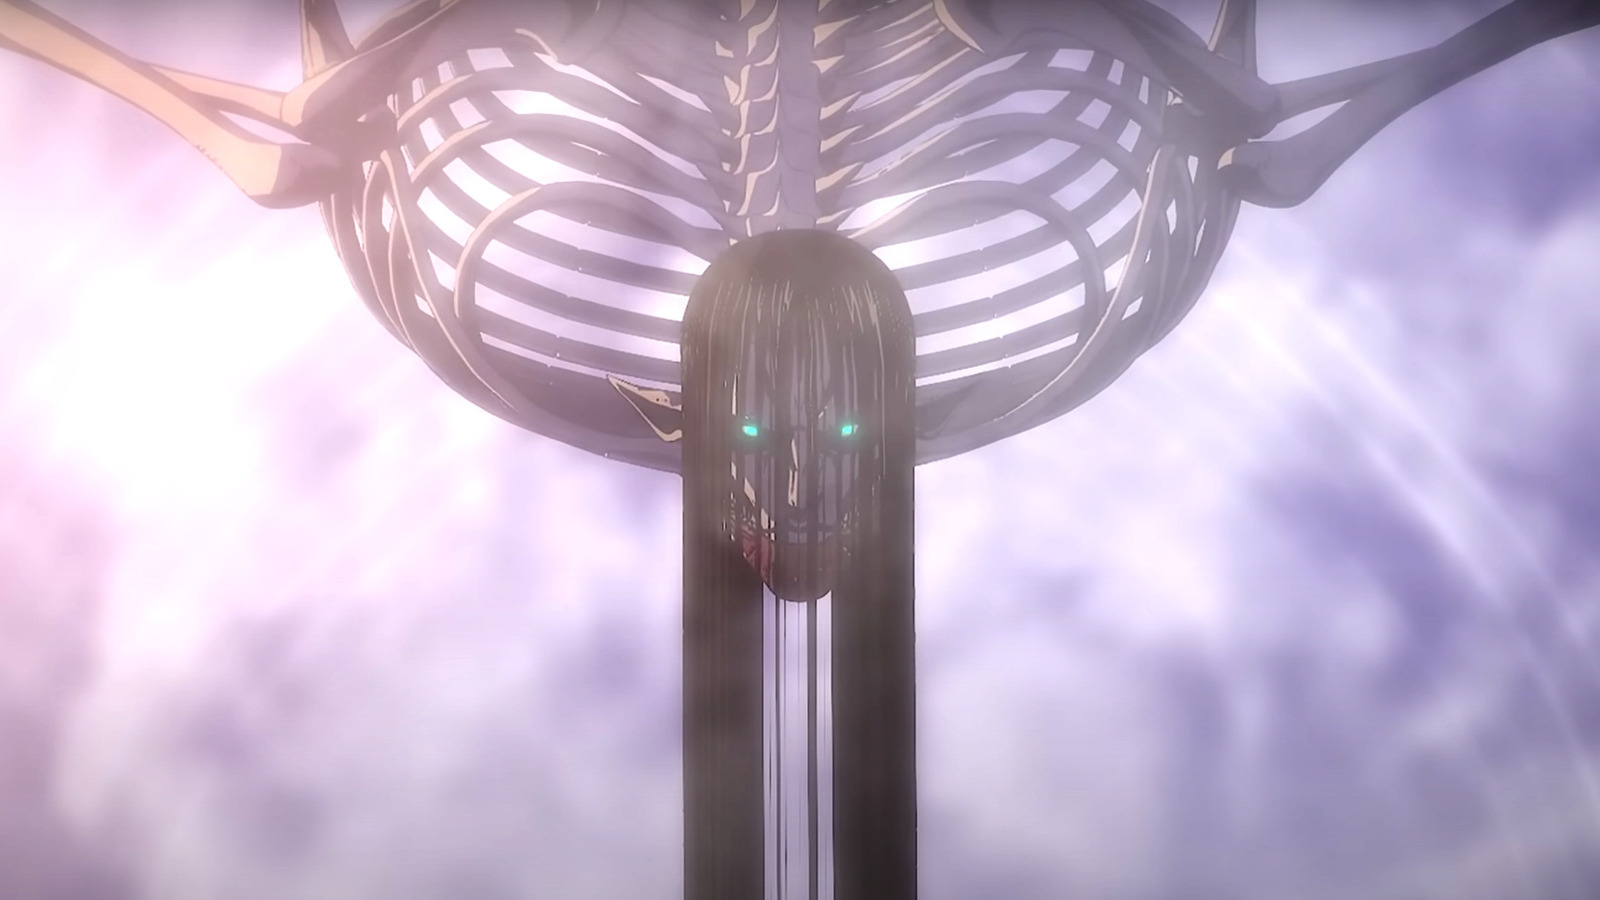 Attack on Titan: Explaining how Eren got the Founding Titan